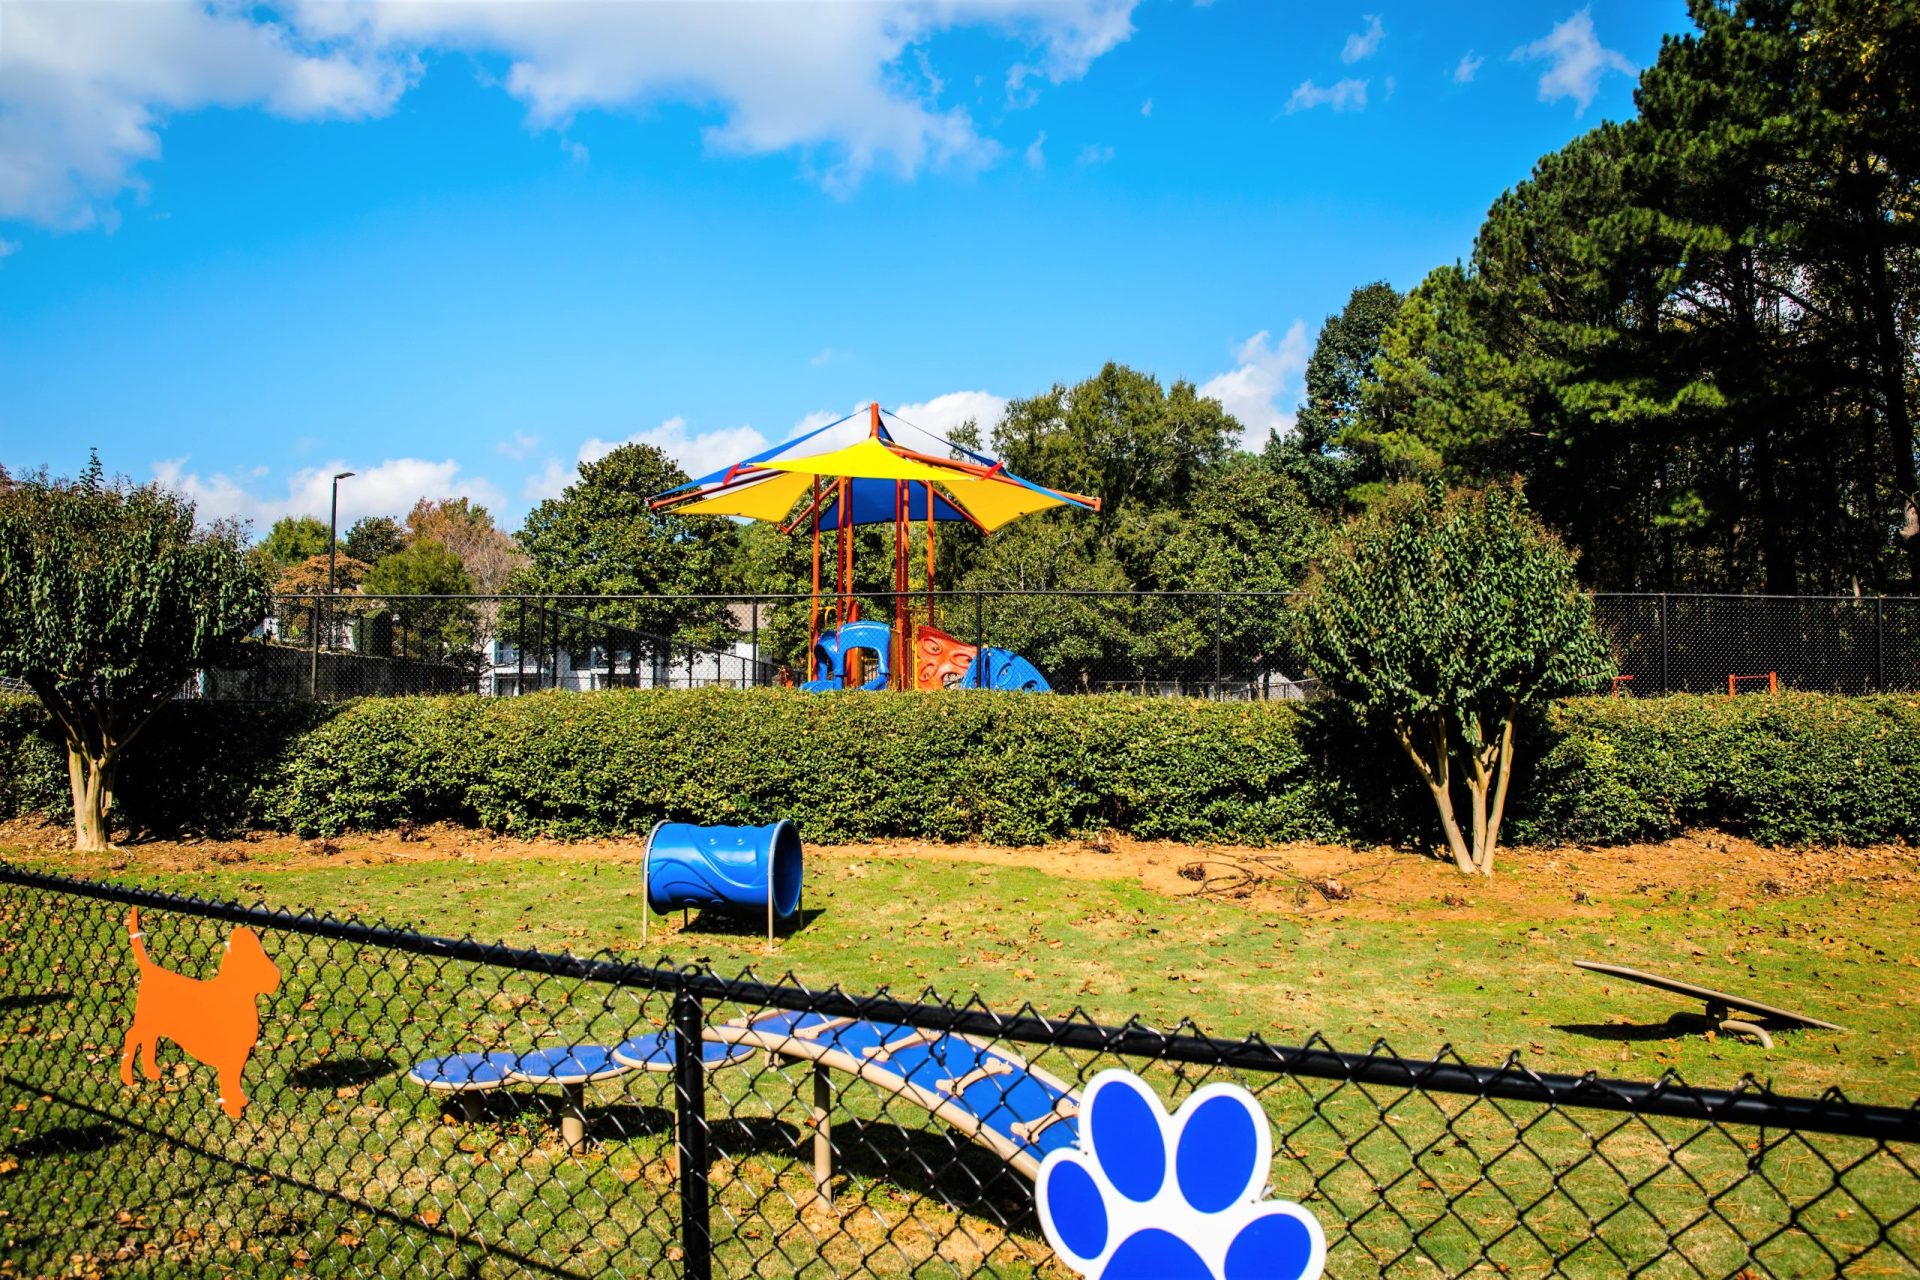 Playground and dog park